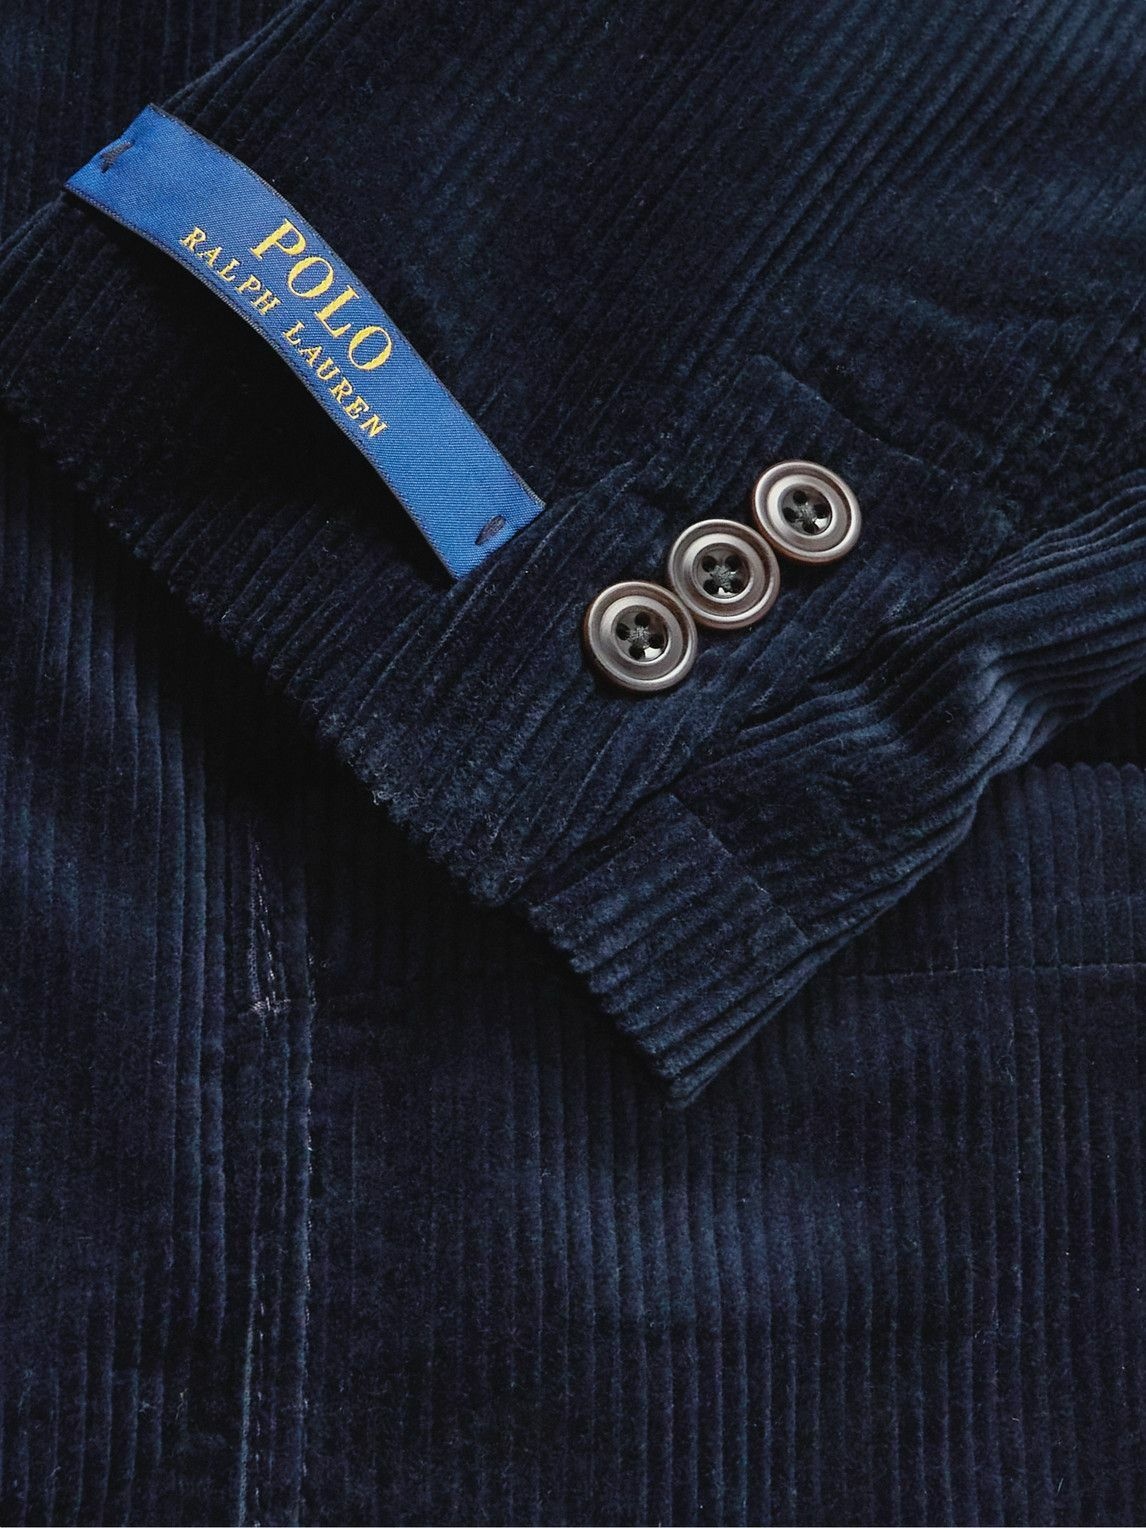 Polo Ralph Lauren - Cotton-Corduroy Suit Jacket - Blue Polo Ralph